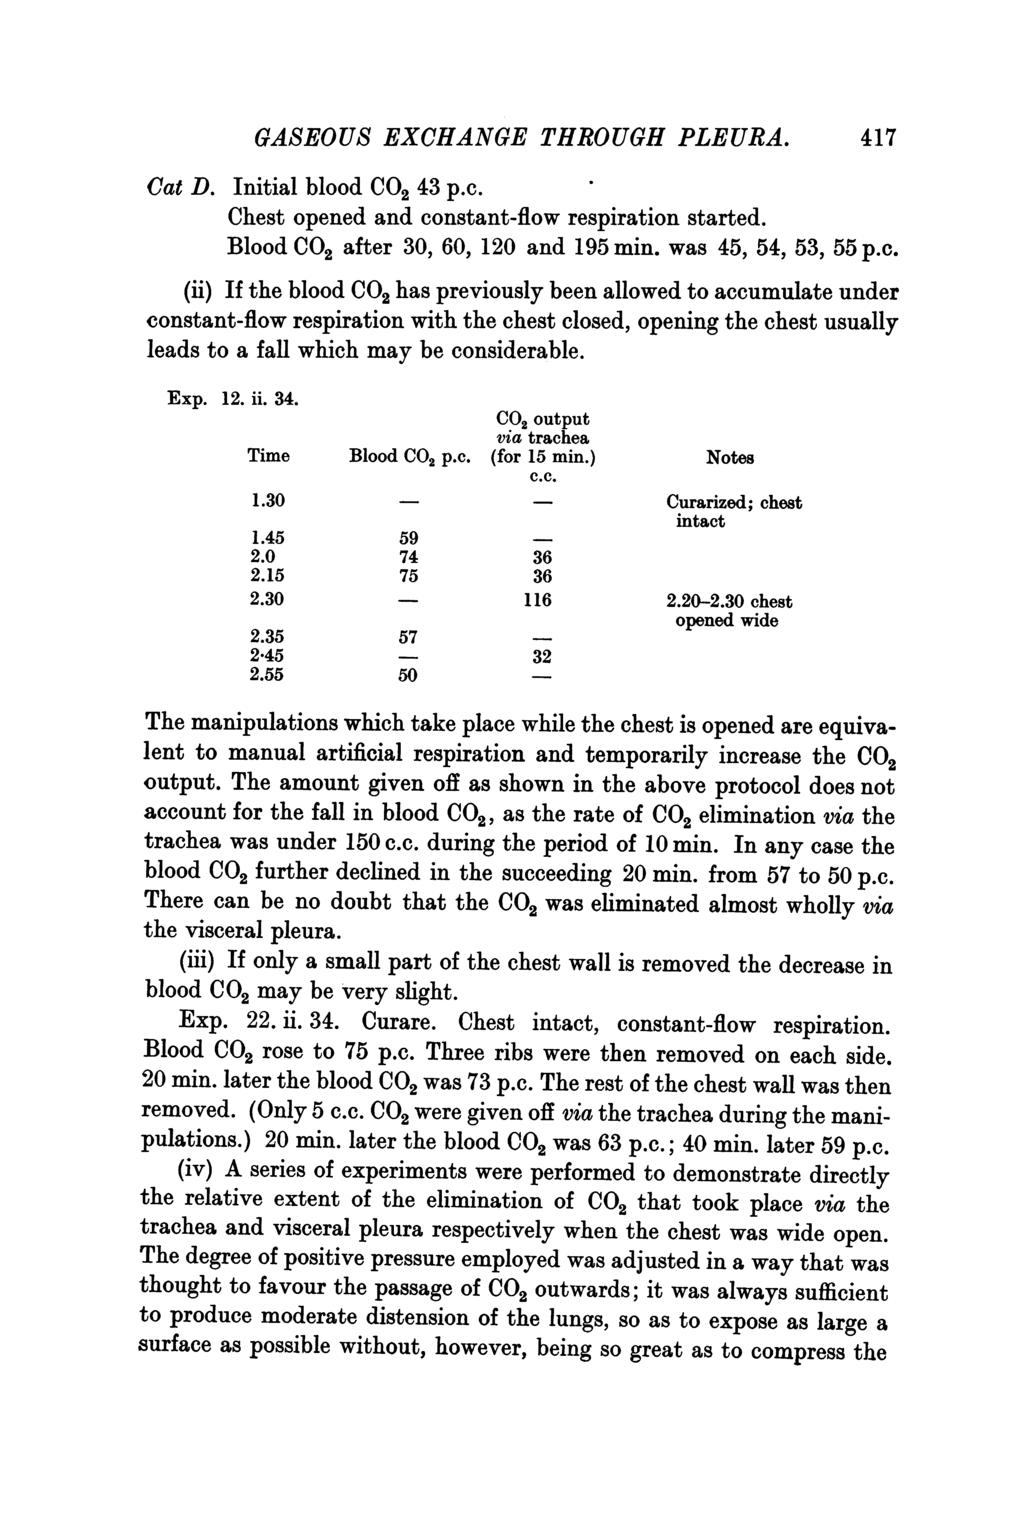 GASEOUS EXCHANGE THROUGH PLEURA. Cat D. Initial blood CO2 43 p.c.